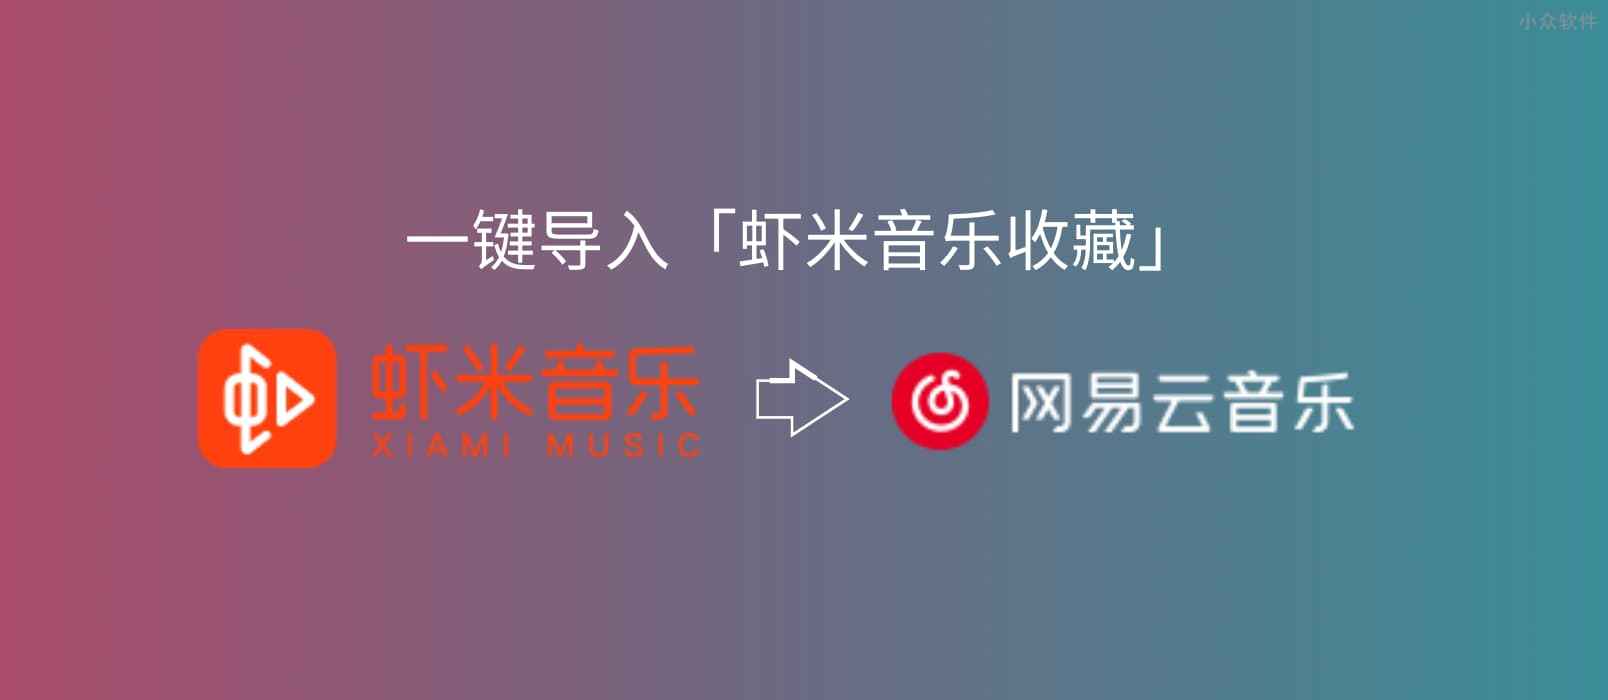 网易云音乐、QQ 音乐均已推出一键导入「虾米音乐收藏」服务